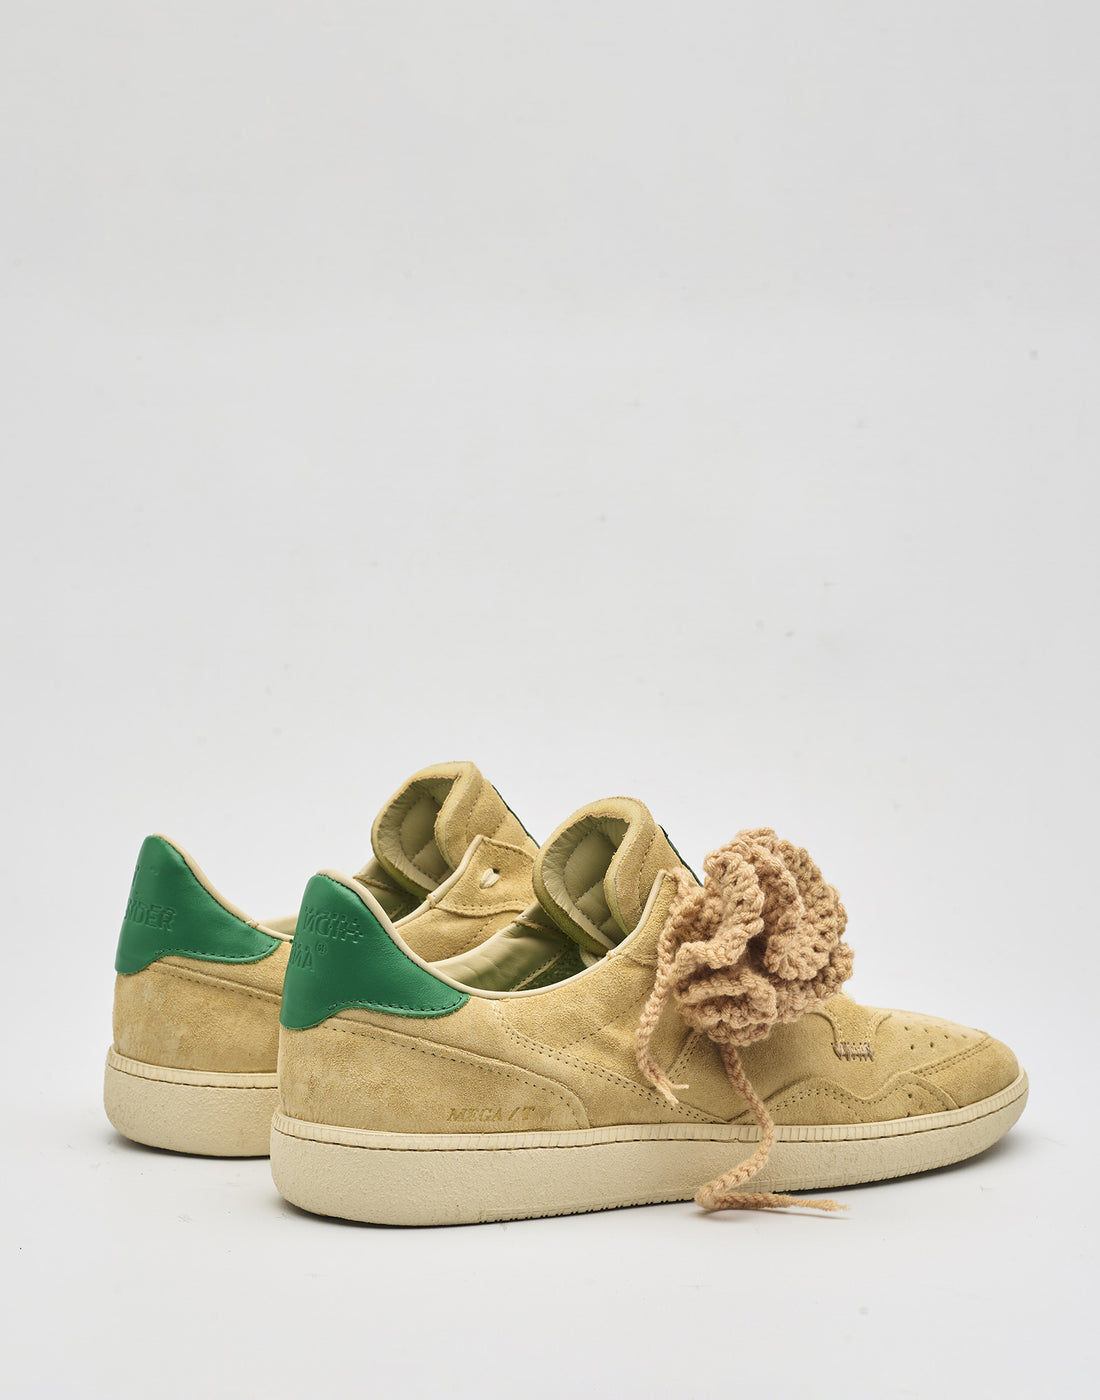 HIDNANDER Sneakers Mega T Sand Dollar/Green con Spilla Crochet